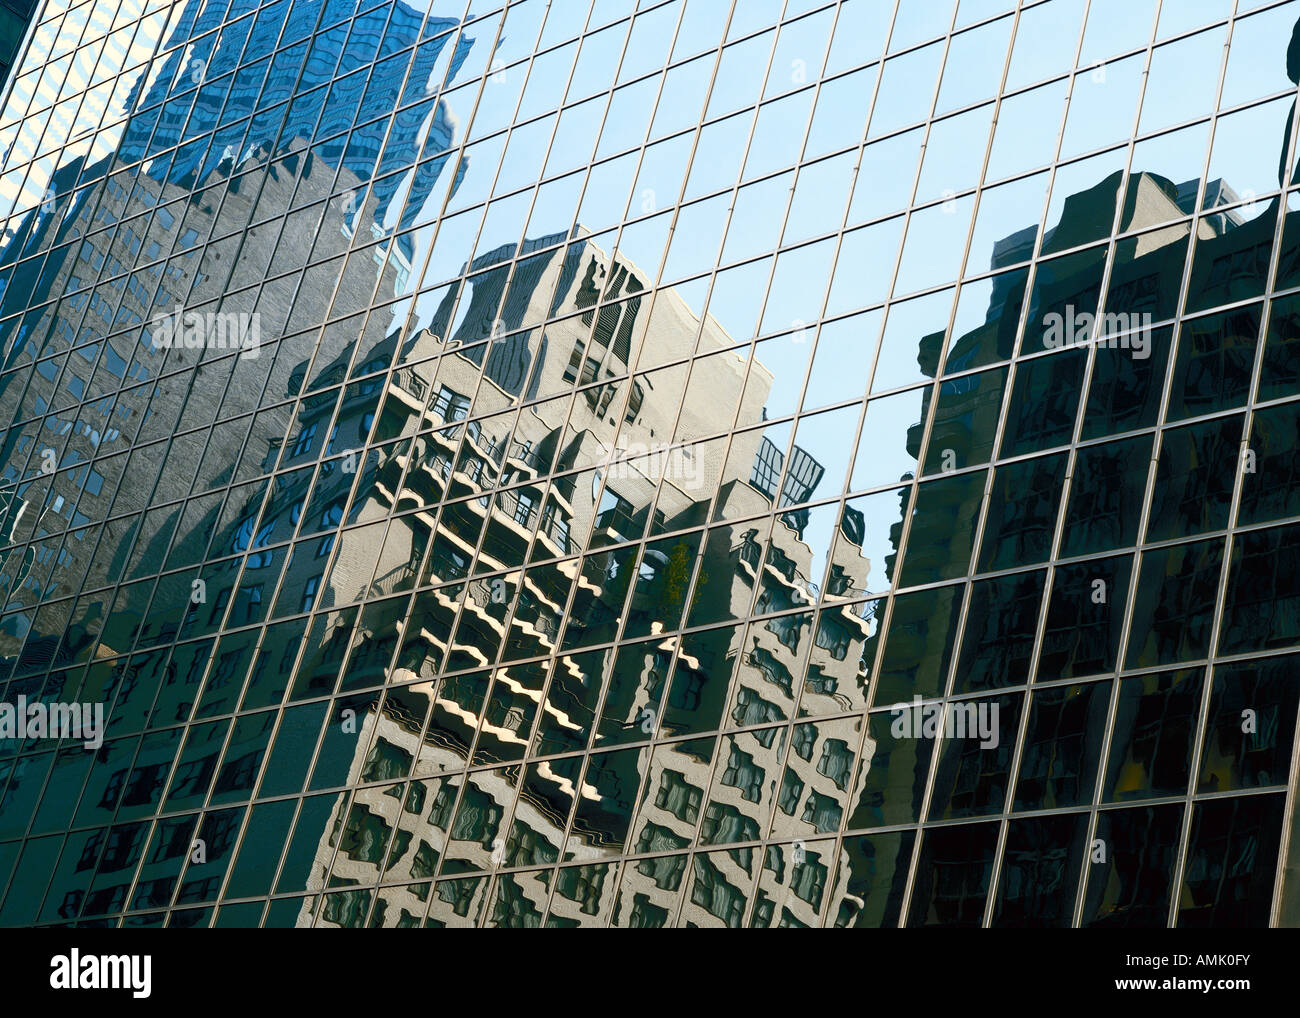 New York, glass facade Stock Photo